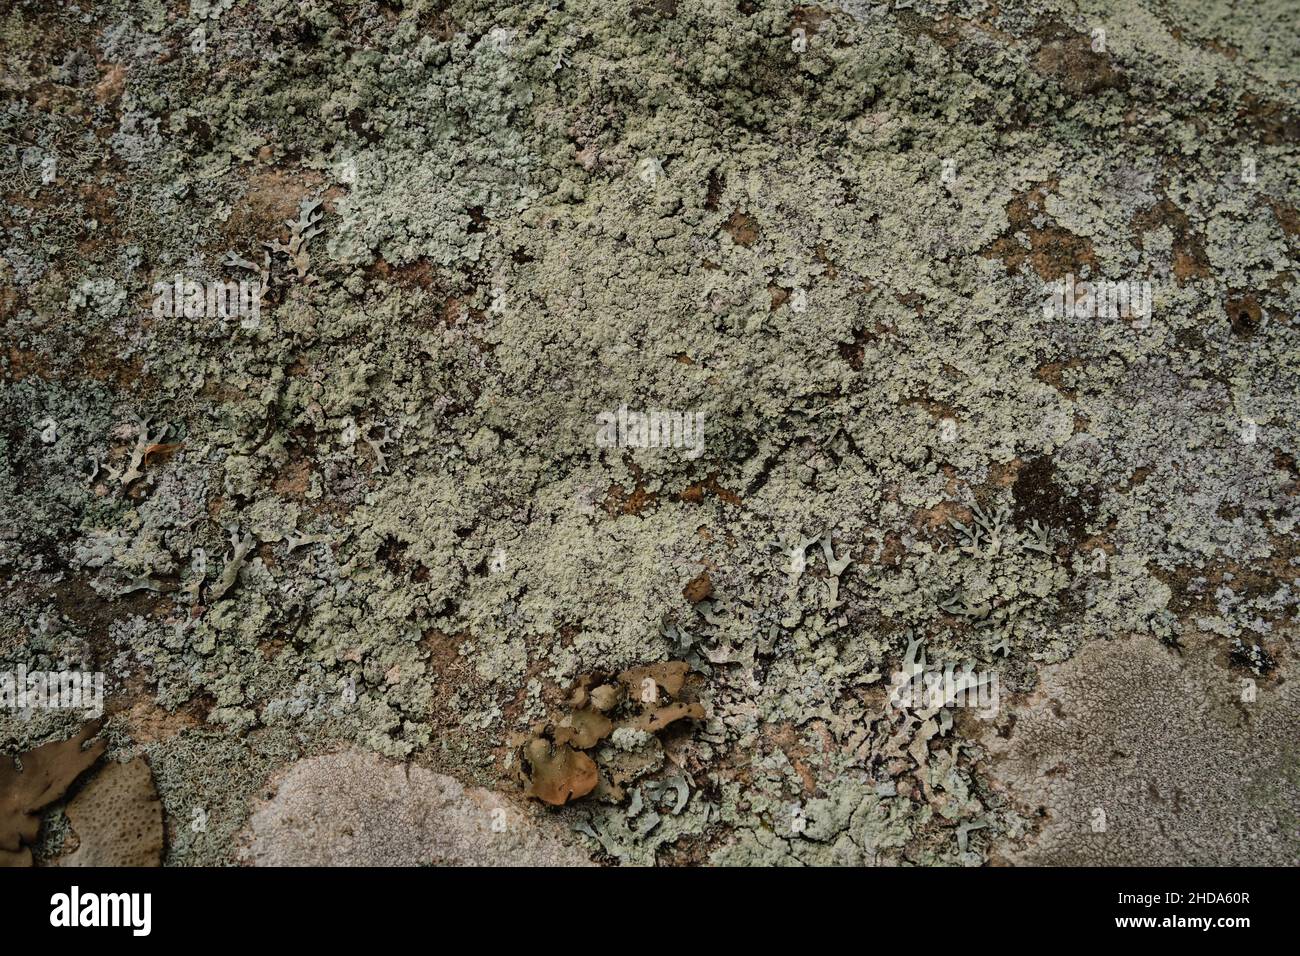 Blassgrüne Flechten bedeckt die Oberfläche von unrüchigem Gestein an einem Canadian Shield-Ausbiss, zusammen mit Blattsegmenten und braunen Pilzen der miteinander verbundenen Stockfoto